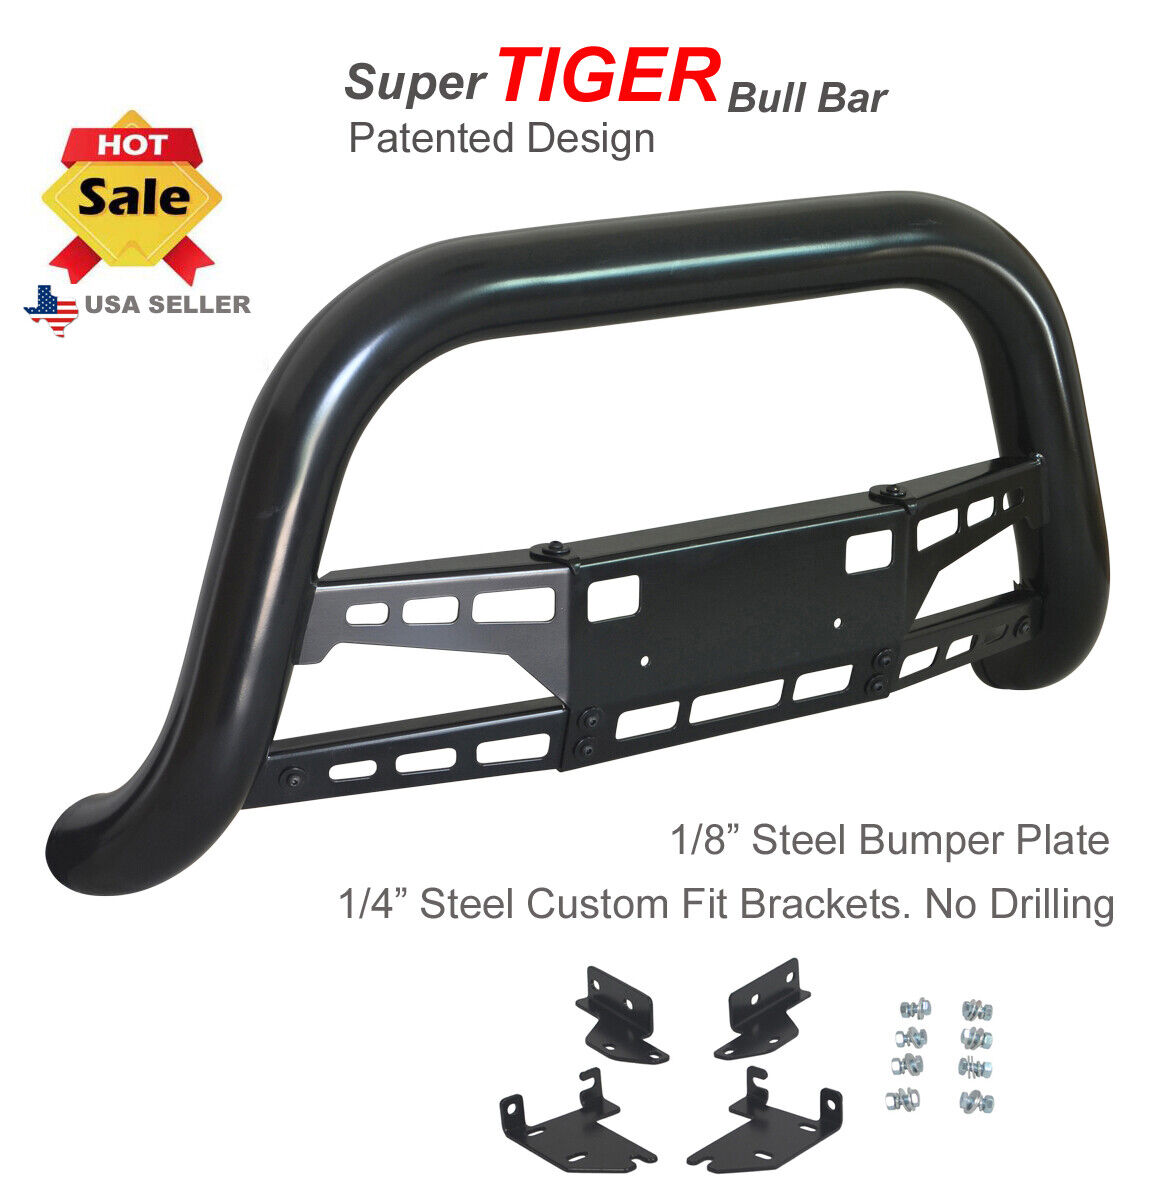 Super Tiger Bull Bar Fits 04-10 Dodge Durango /06-09 Chrysler Aspen Bumper Guard